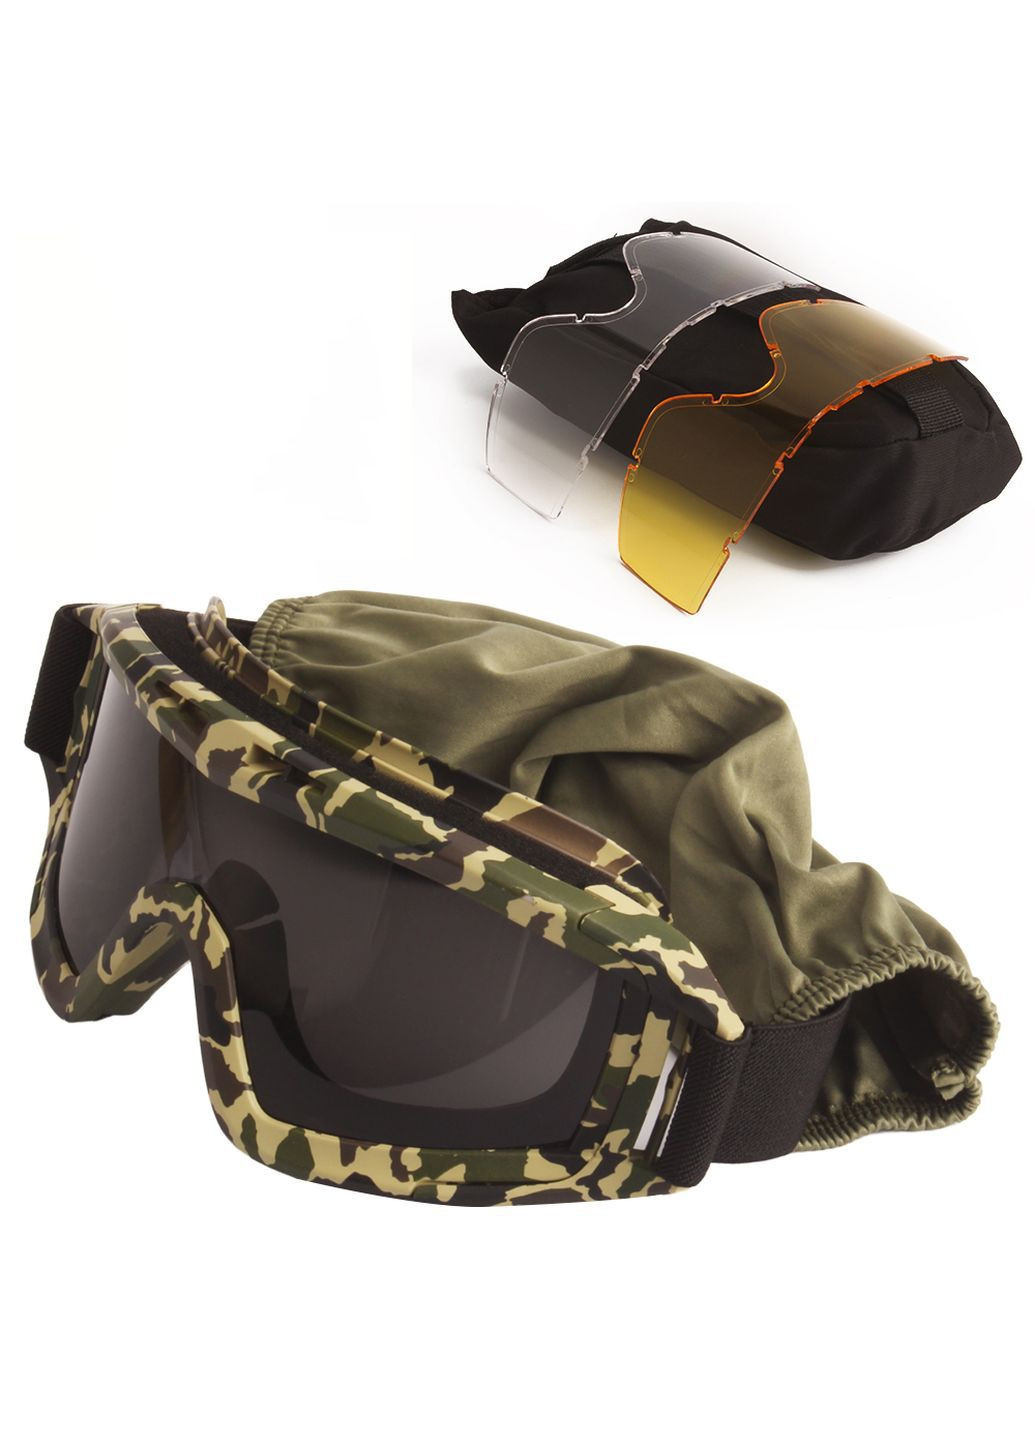 Тактические очки защитная маска с 3 линзами (Камуфляж) / Баллистические очки с сменными линзами Daisy (280826688)